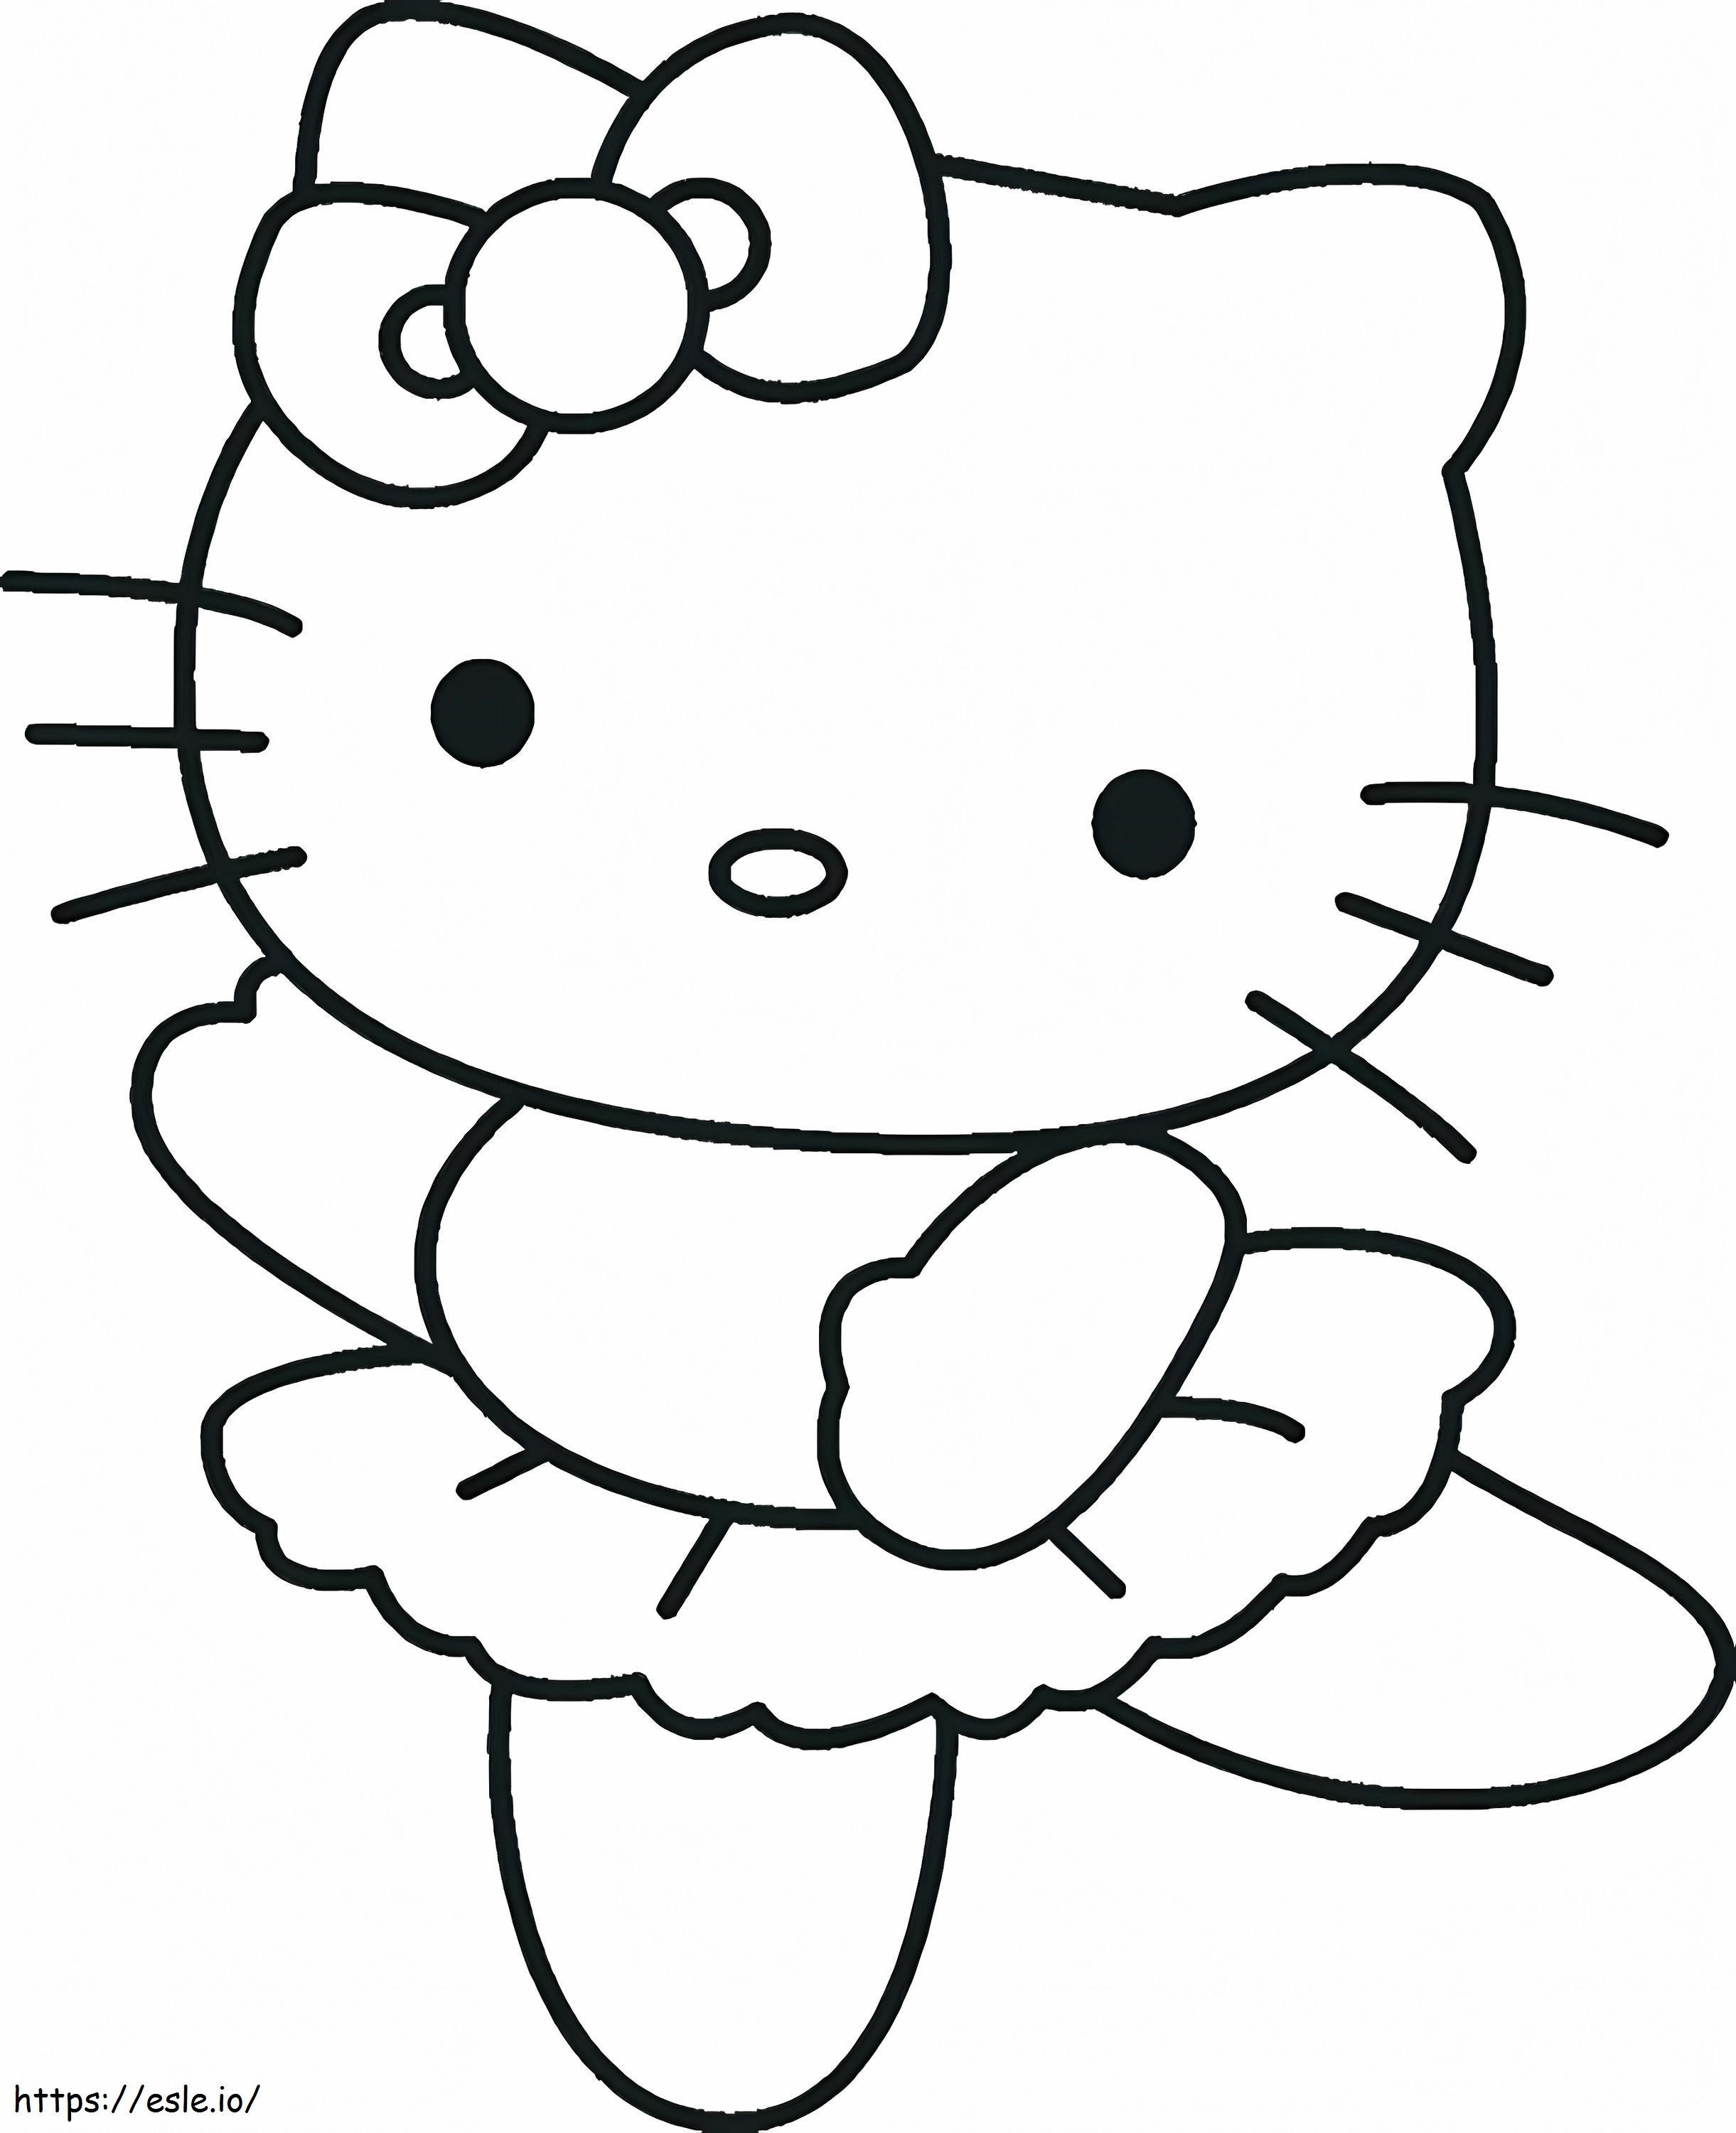 Coloriage  Feuille de danseuse de ballet imprimable Hello Kitty pour enfants gratuit à imprimer dessin